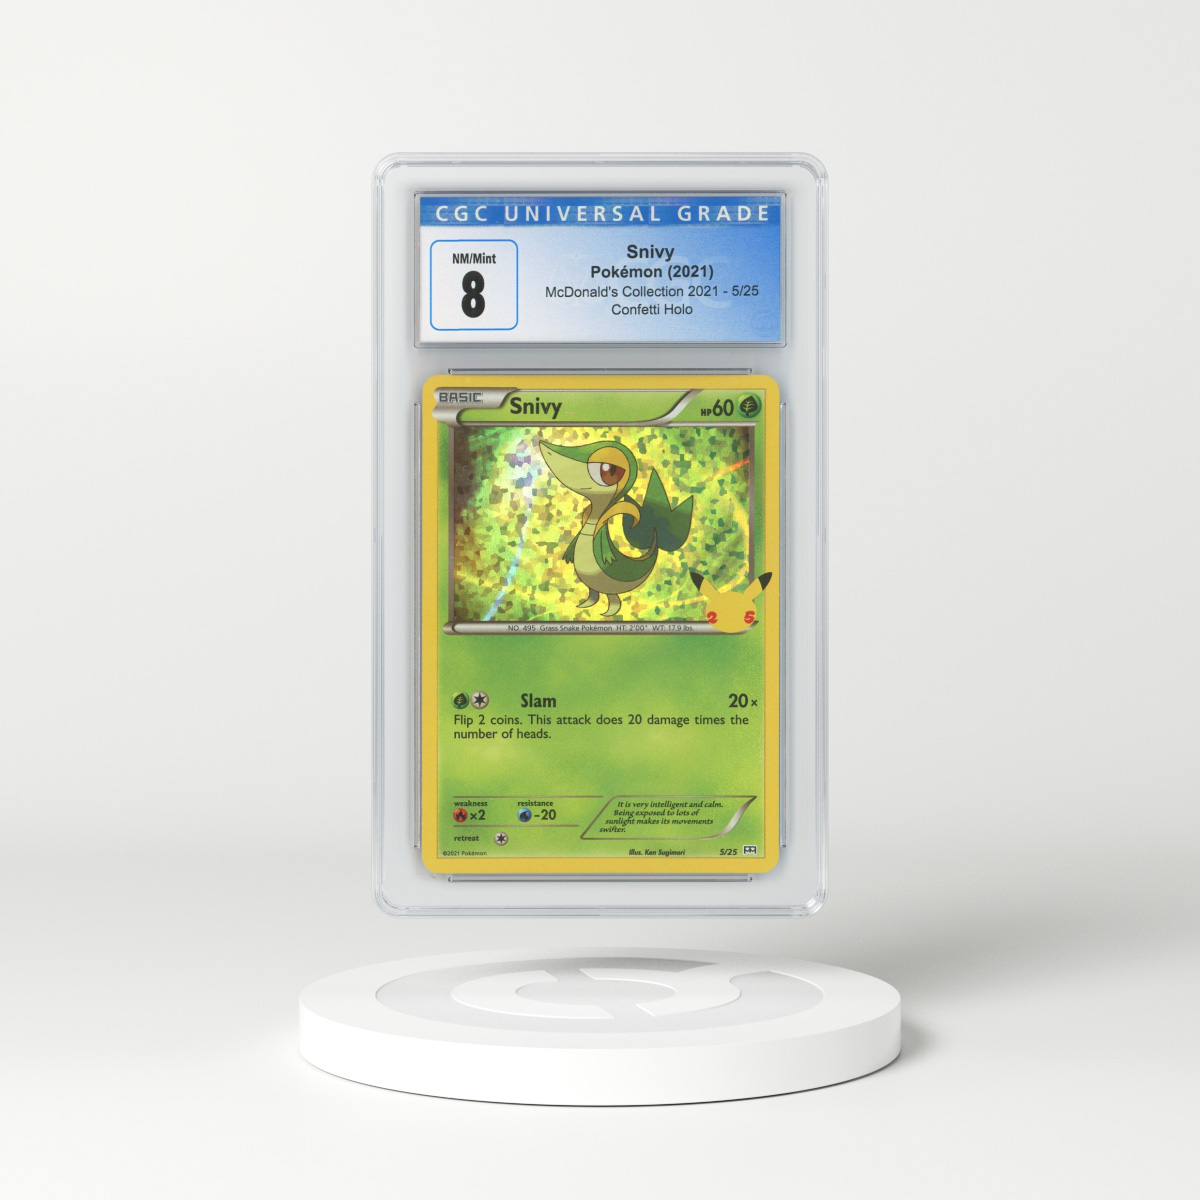 Pachirisu - Diamond & Pearl #35 Pokemon Card